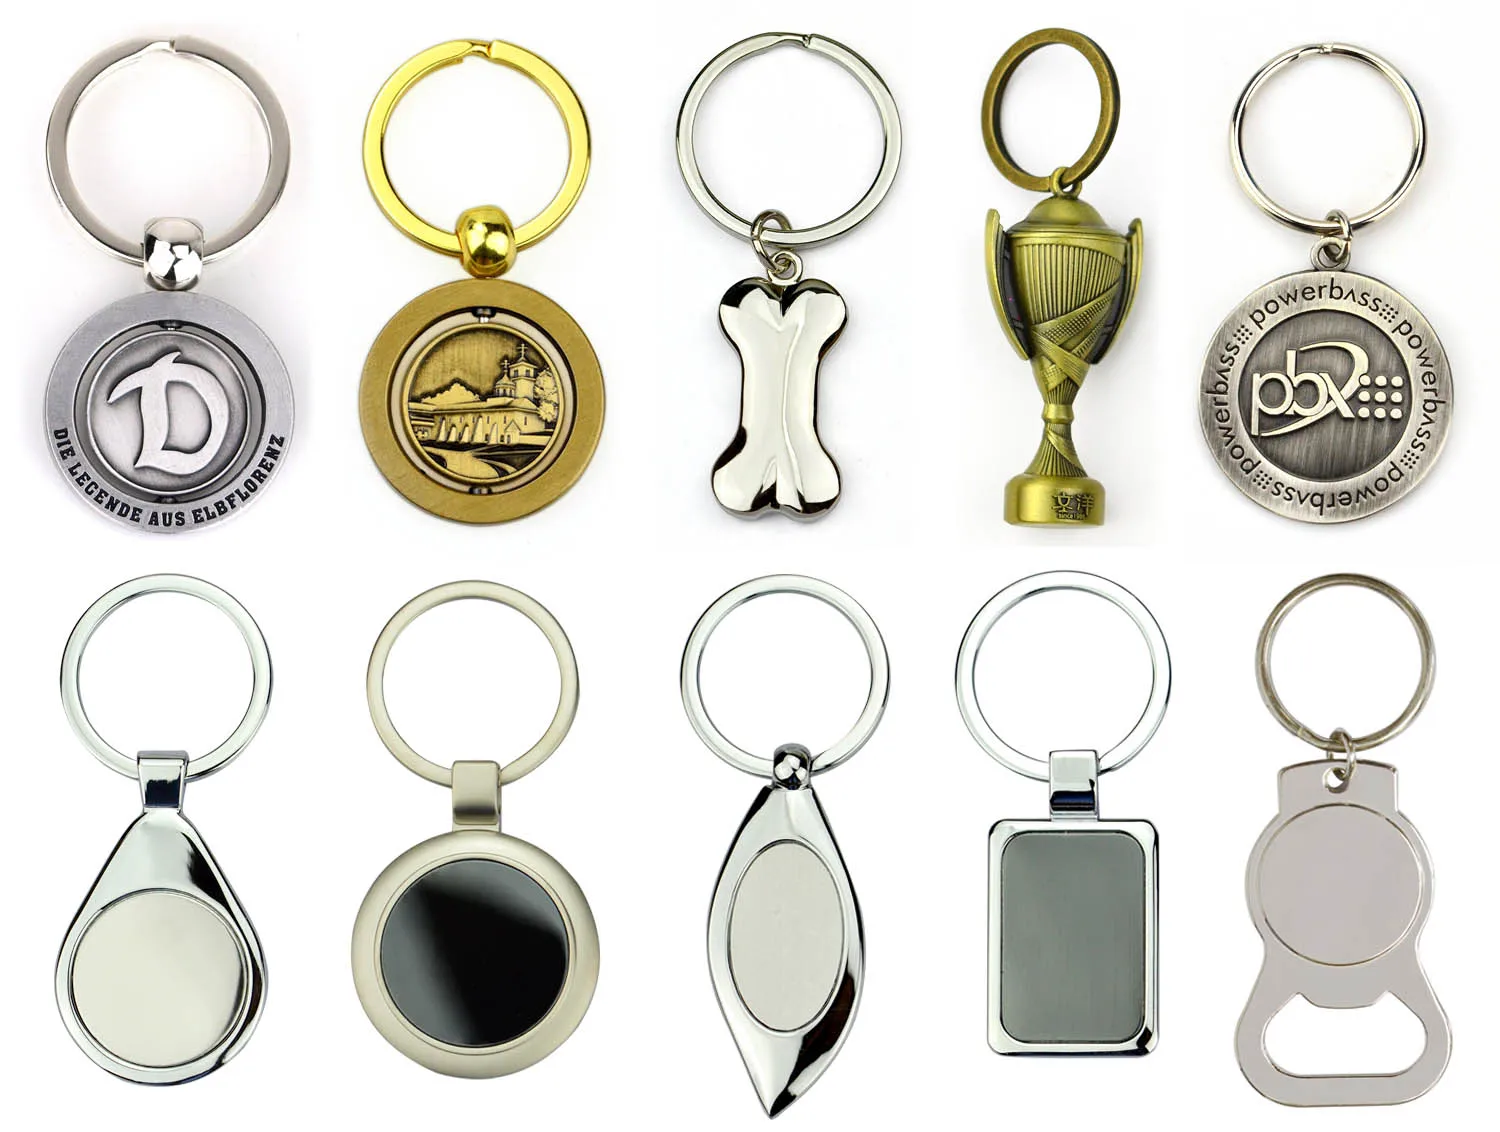 Leather key fob manufacturers black leather keyholder key holder ring for car